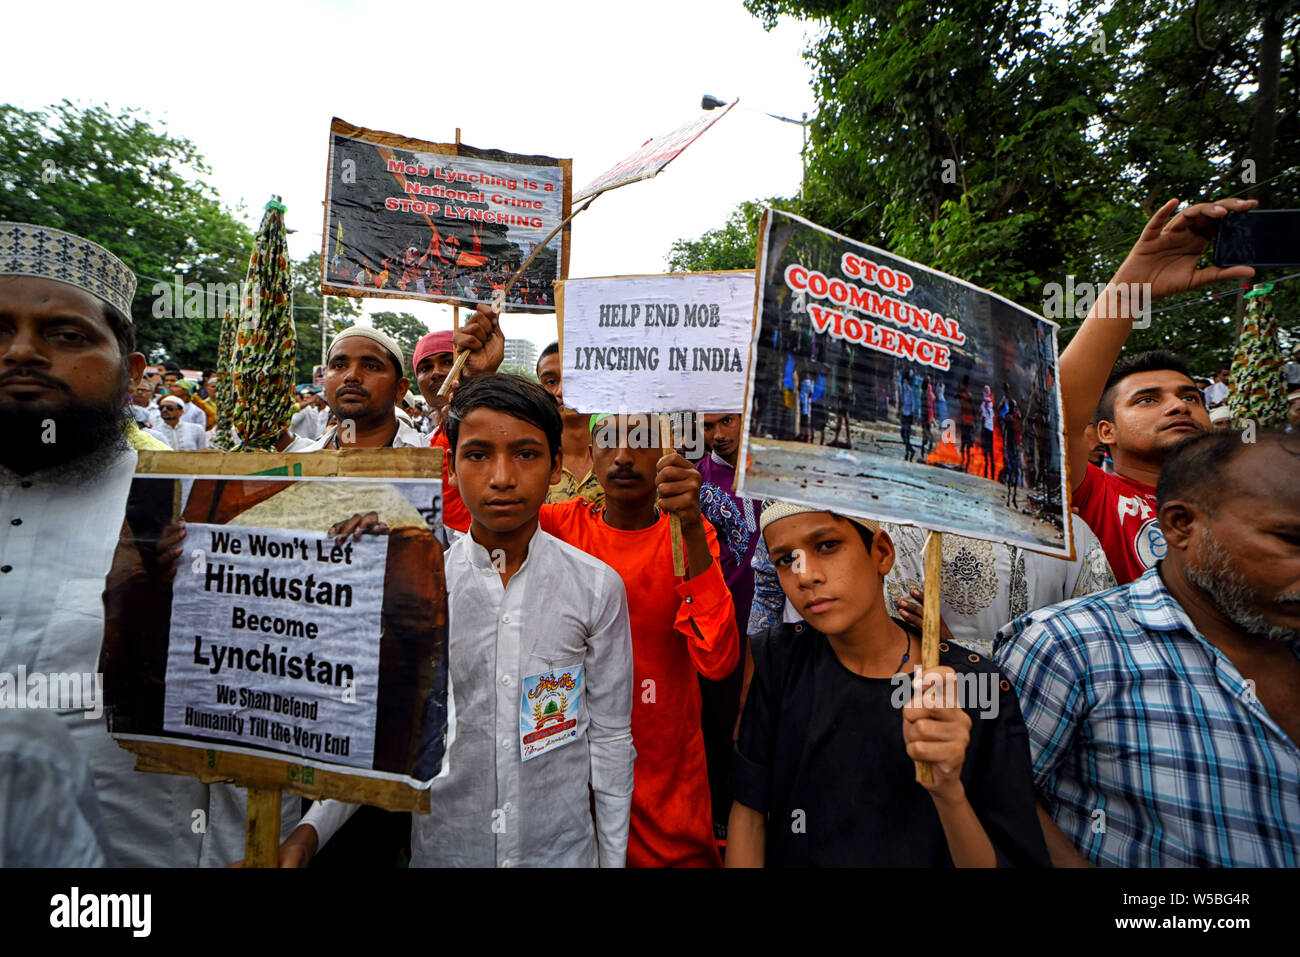 Die Demonstranten aus den verschiedenen Minderheit Gemeinschaft von Indien halten Plakate hoch, während der Mob Lynchmord Protest in Kalkutta. Protest gegen die jüngsten Mob lynchmord Vorfälle am anderen Teil von Indien, 2019 Hasse, Verbrechen im Namen der Religion ständig zugenommen und störende kommunale Harmonien des Landes in verschiedenen Staaten. Stockfoto